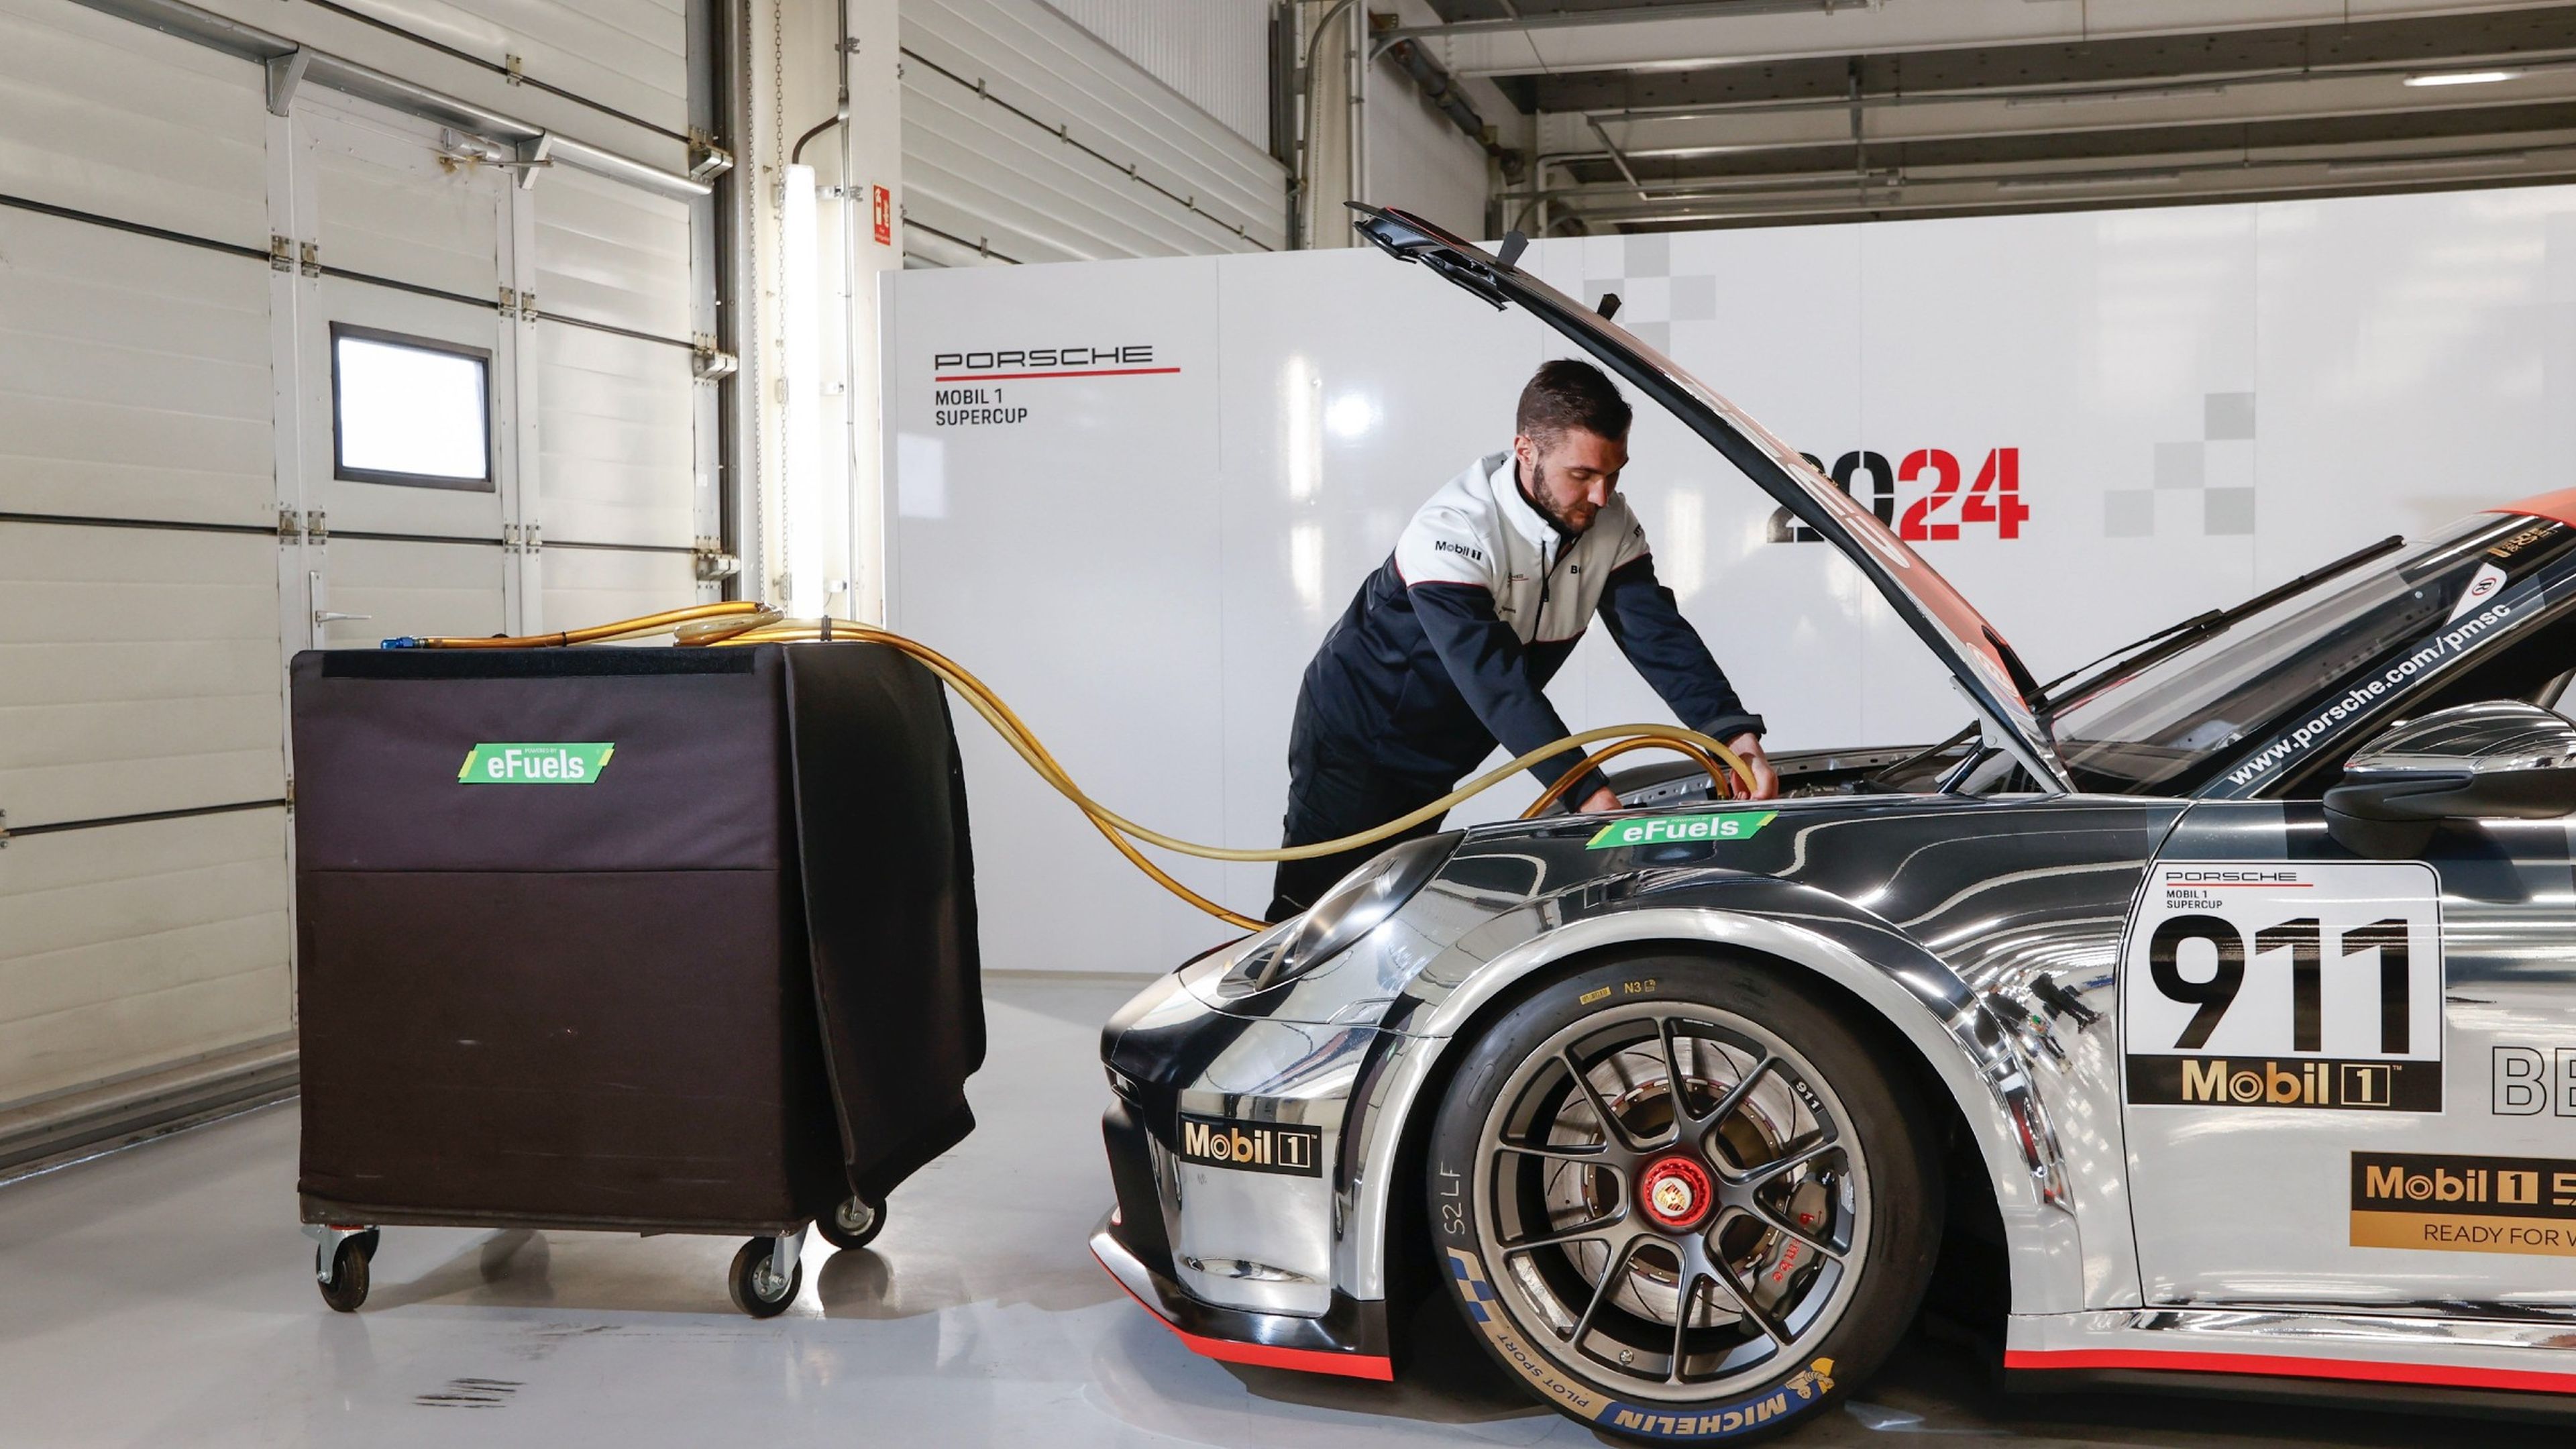 Porsche combustibles sintéticos alternativa a coches eléctricos